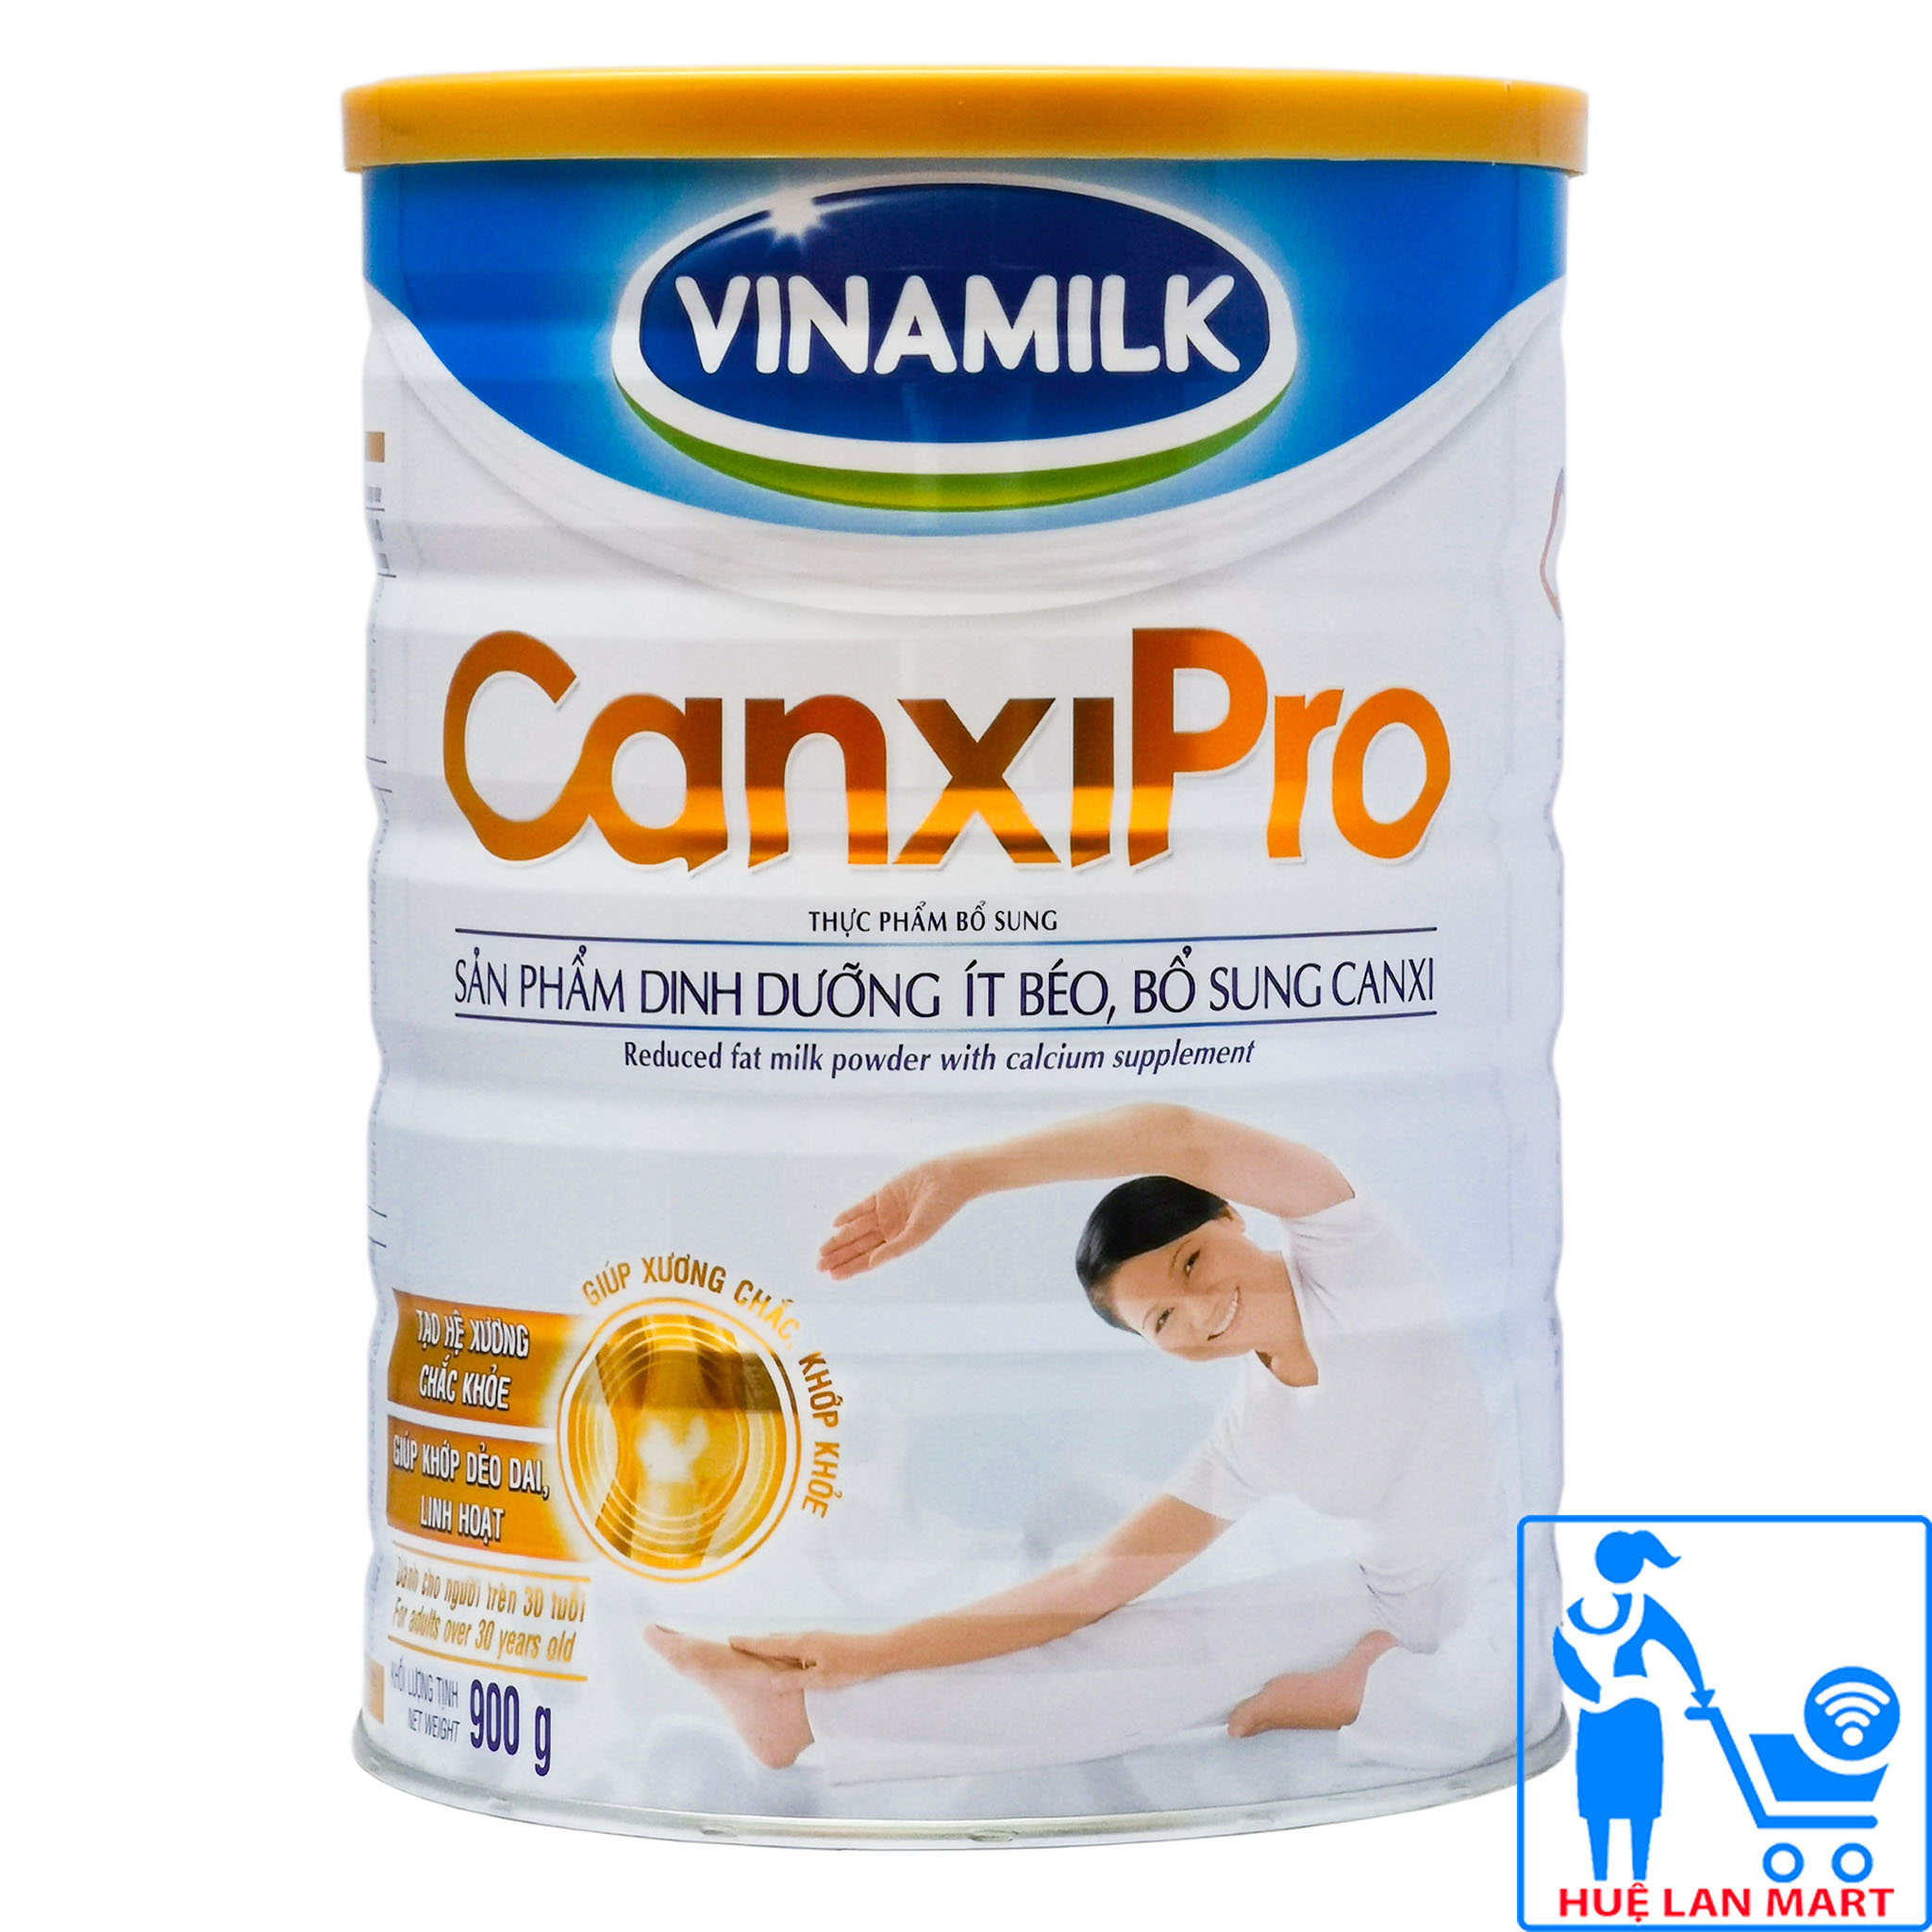 Sữa Bột Vinamilk Canxi Pro Hộp 900g Sản phẩm dinh dưỡng ít béo, bổ sung